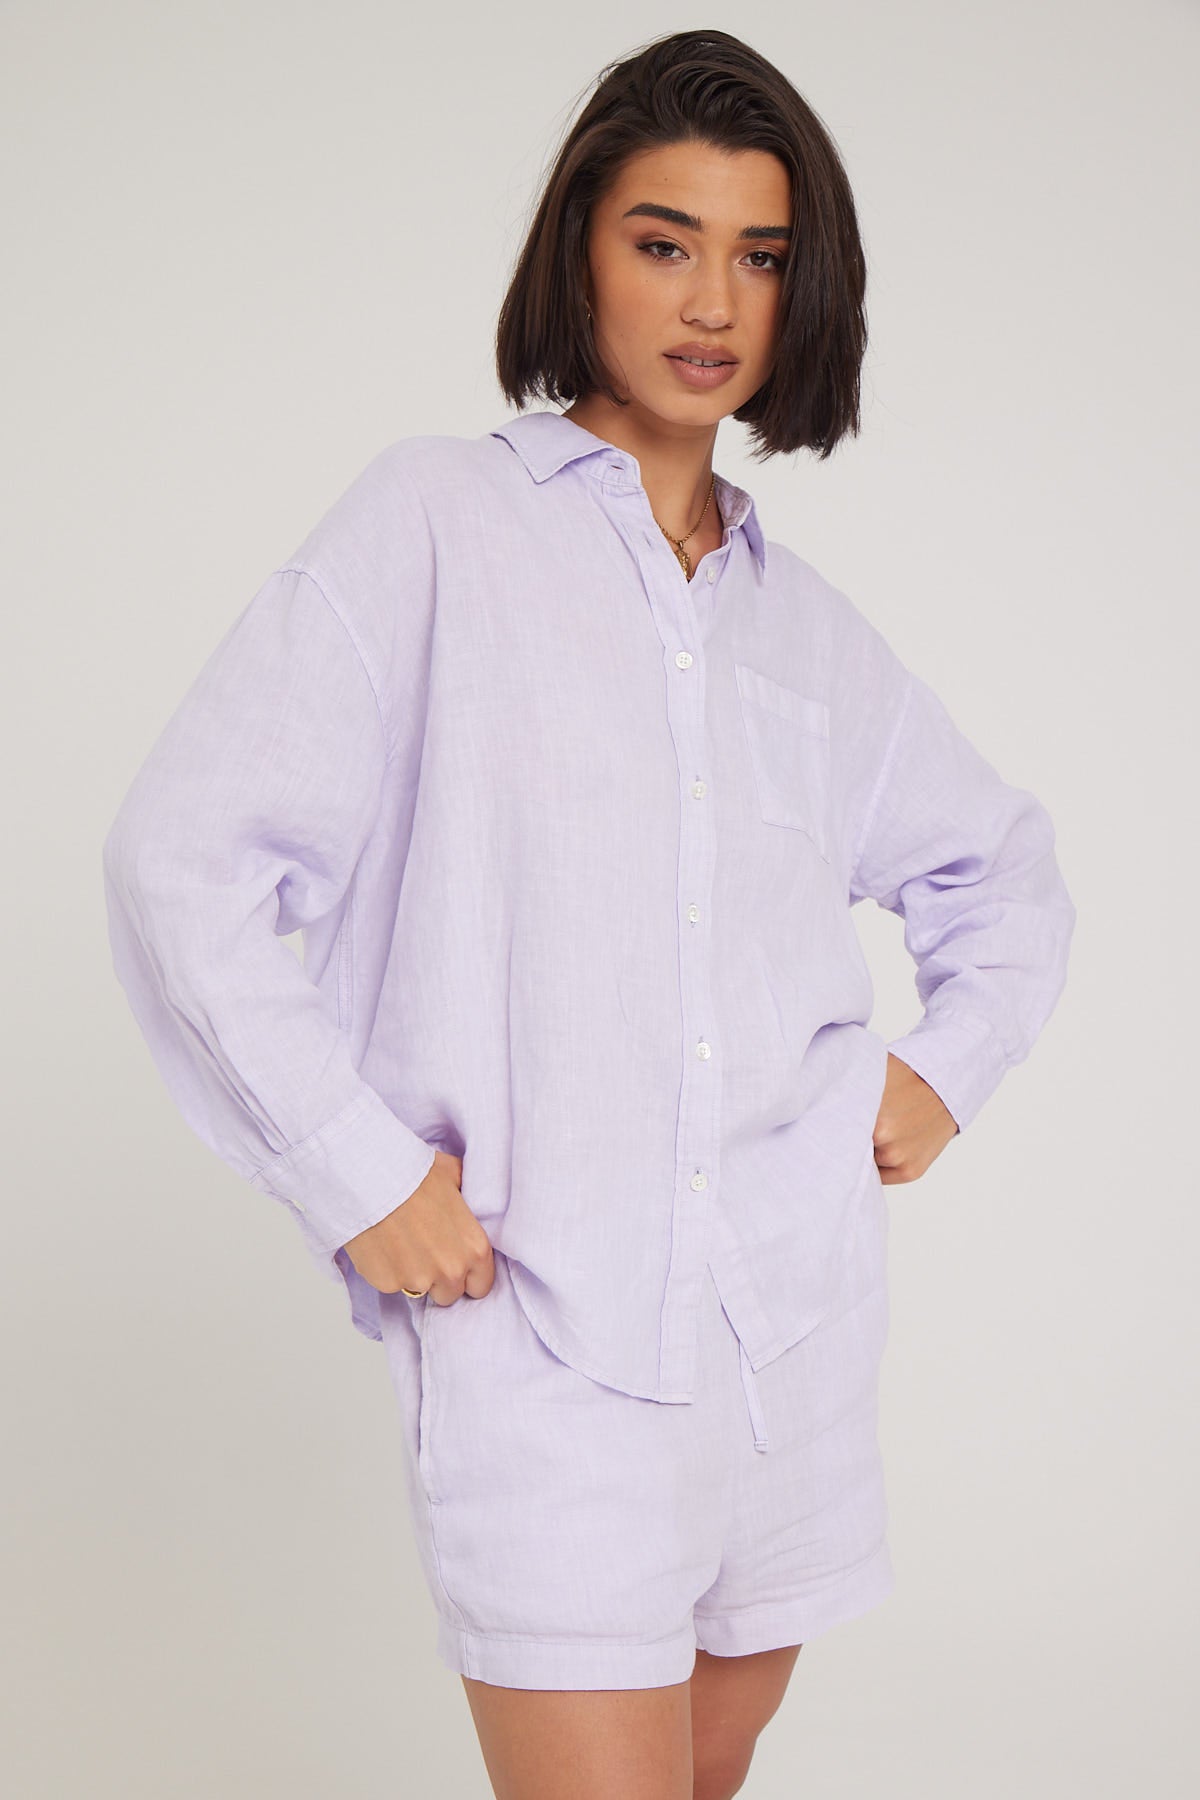 Academy Brand Hampton Linen Shirt Lavendar